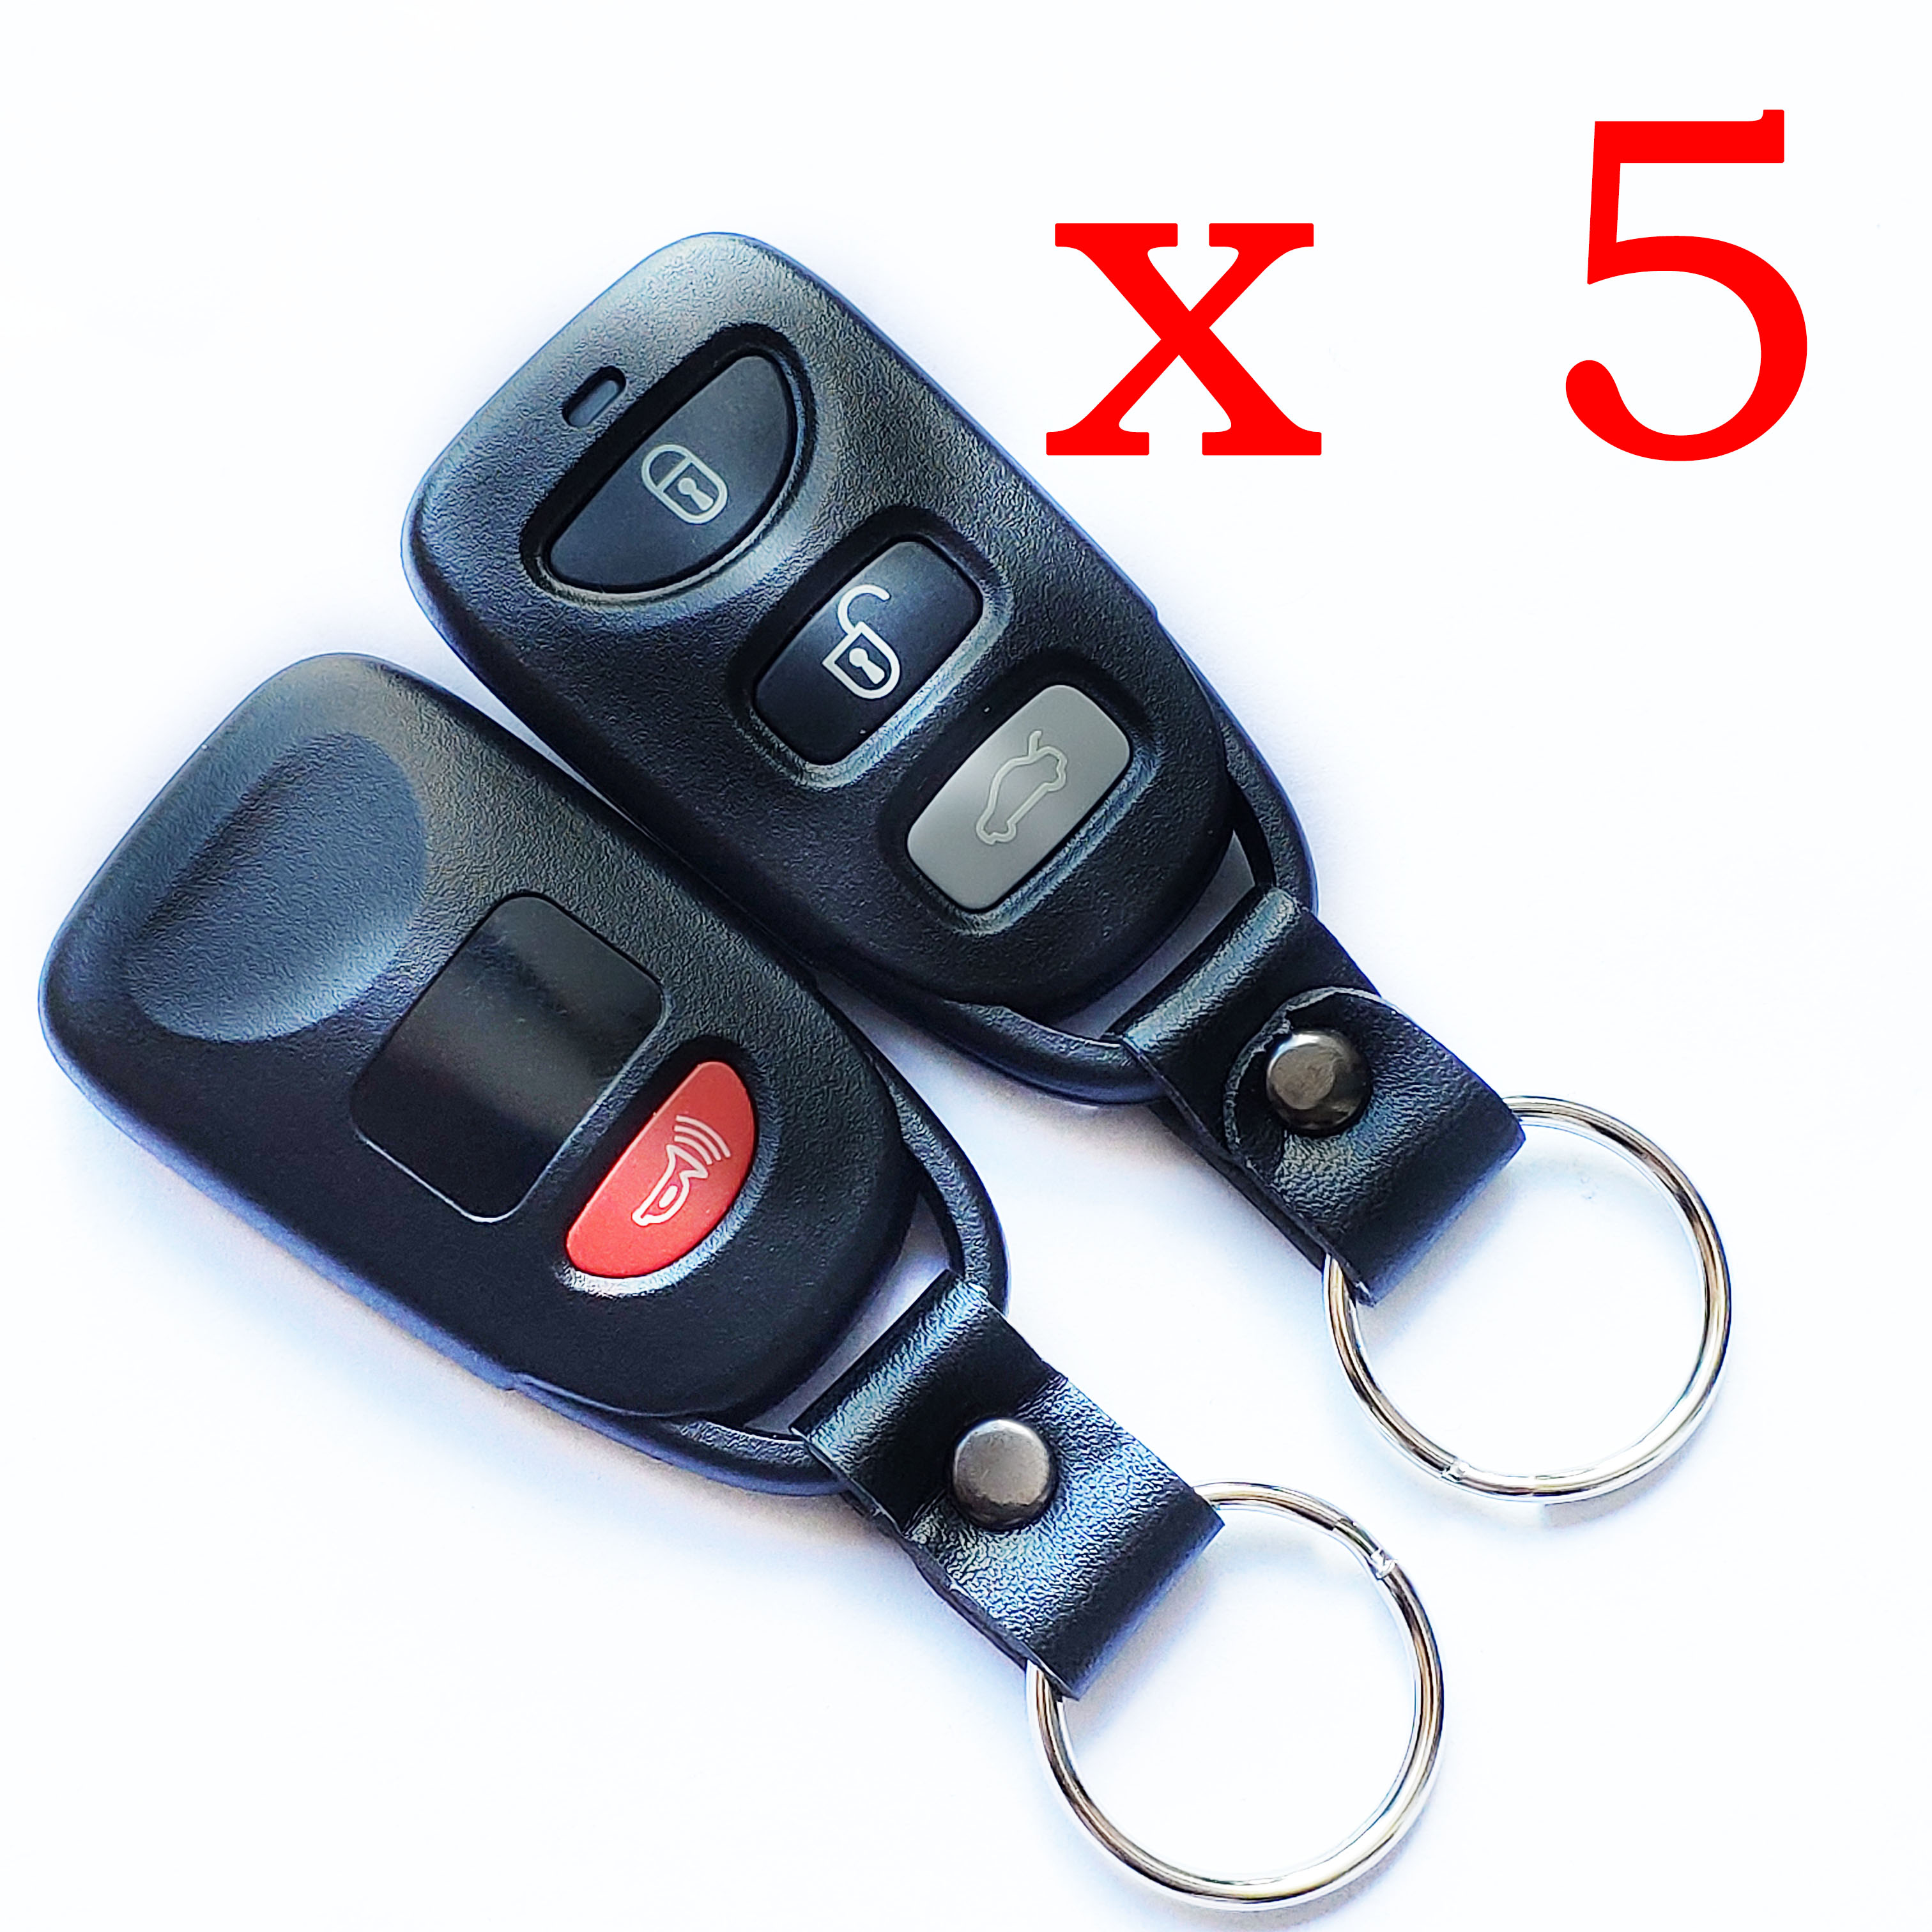 5 pieces Xhorse VVDI Hyundai Type Universal Remote Key - XKHY01EN